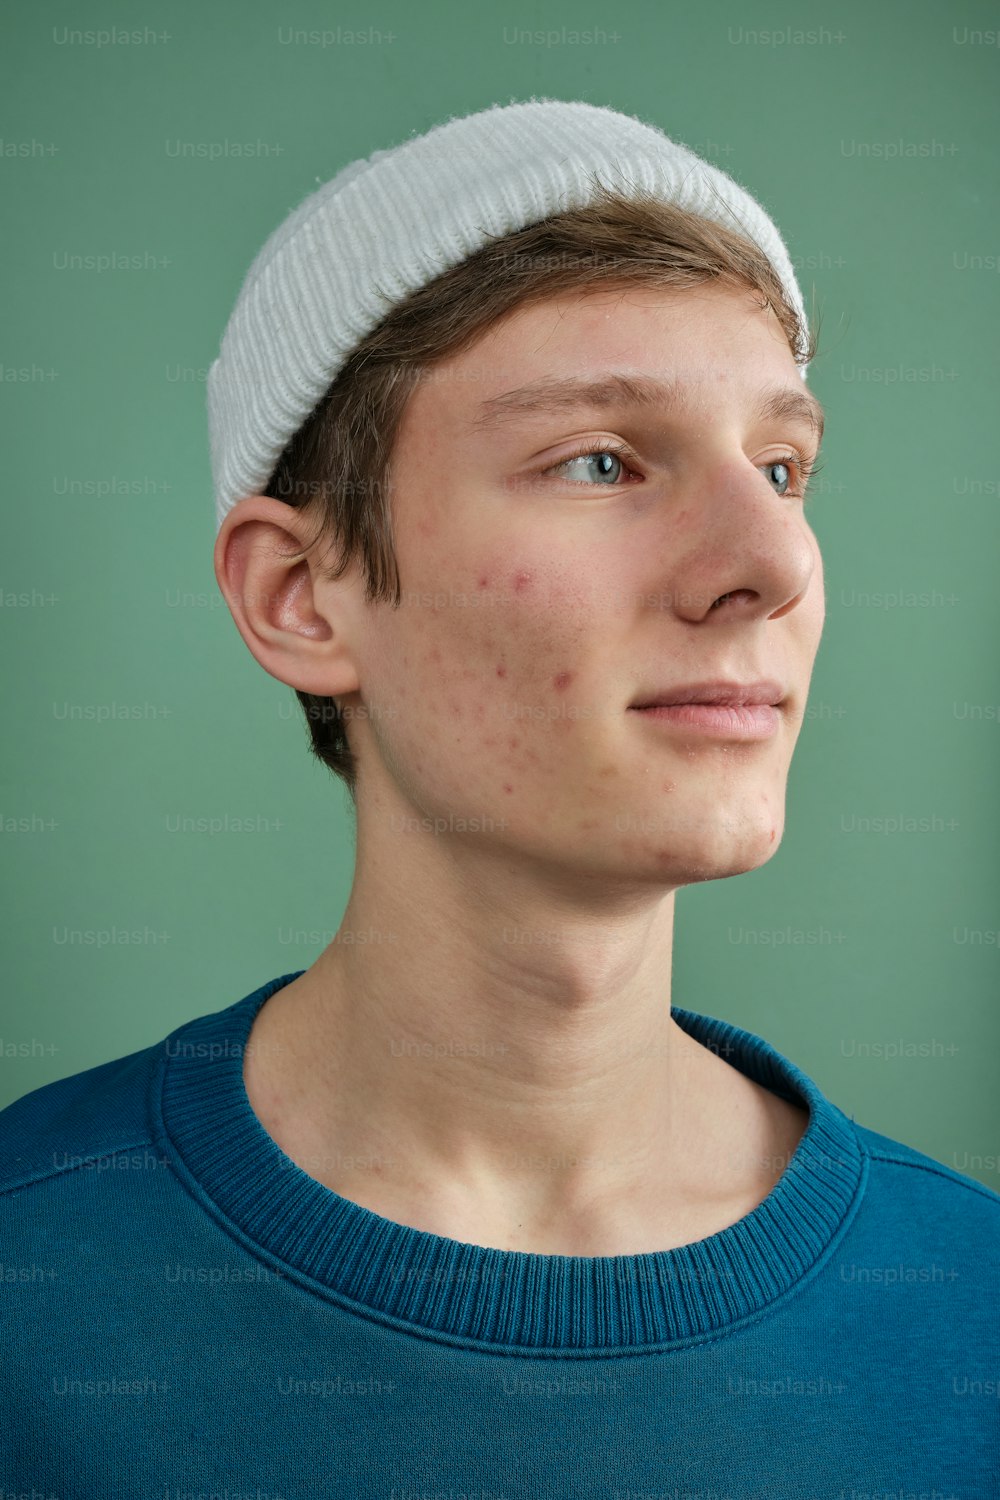 Un joven con el pelo pecosa con un sombrero